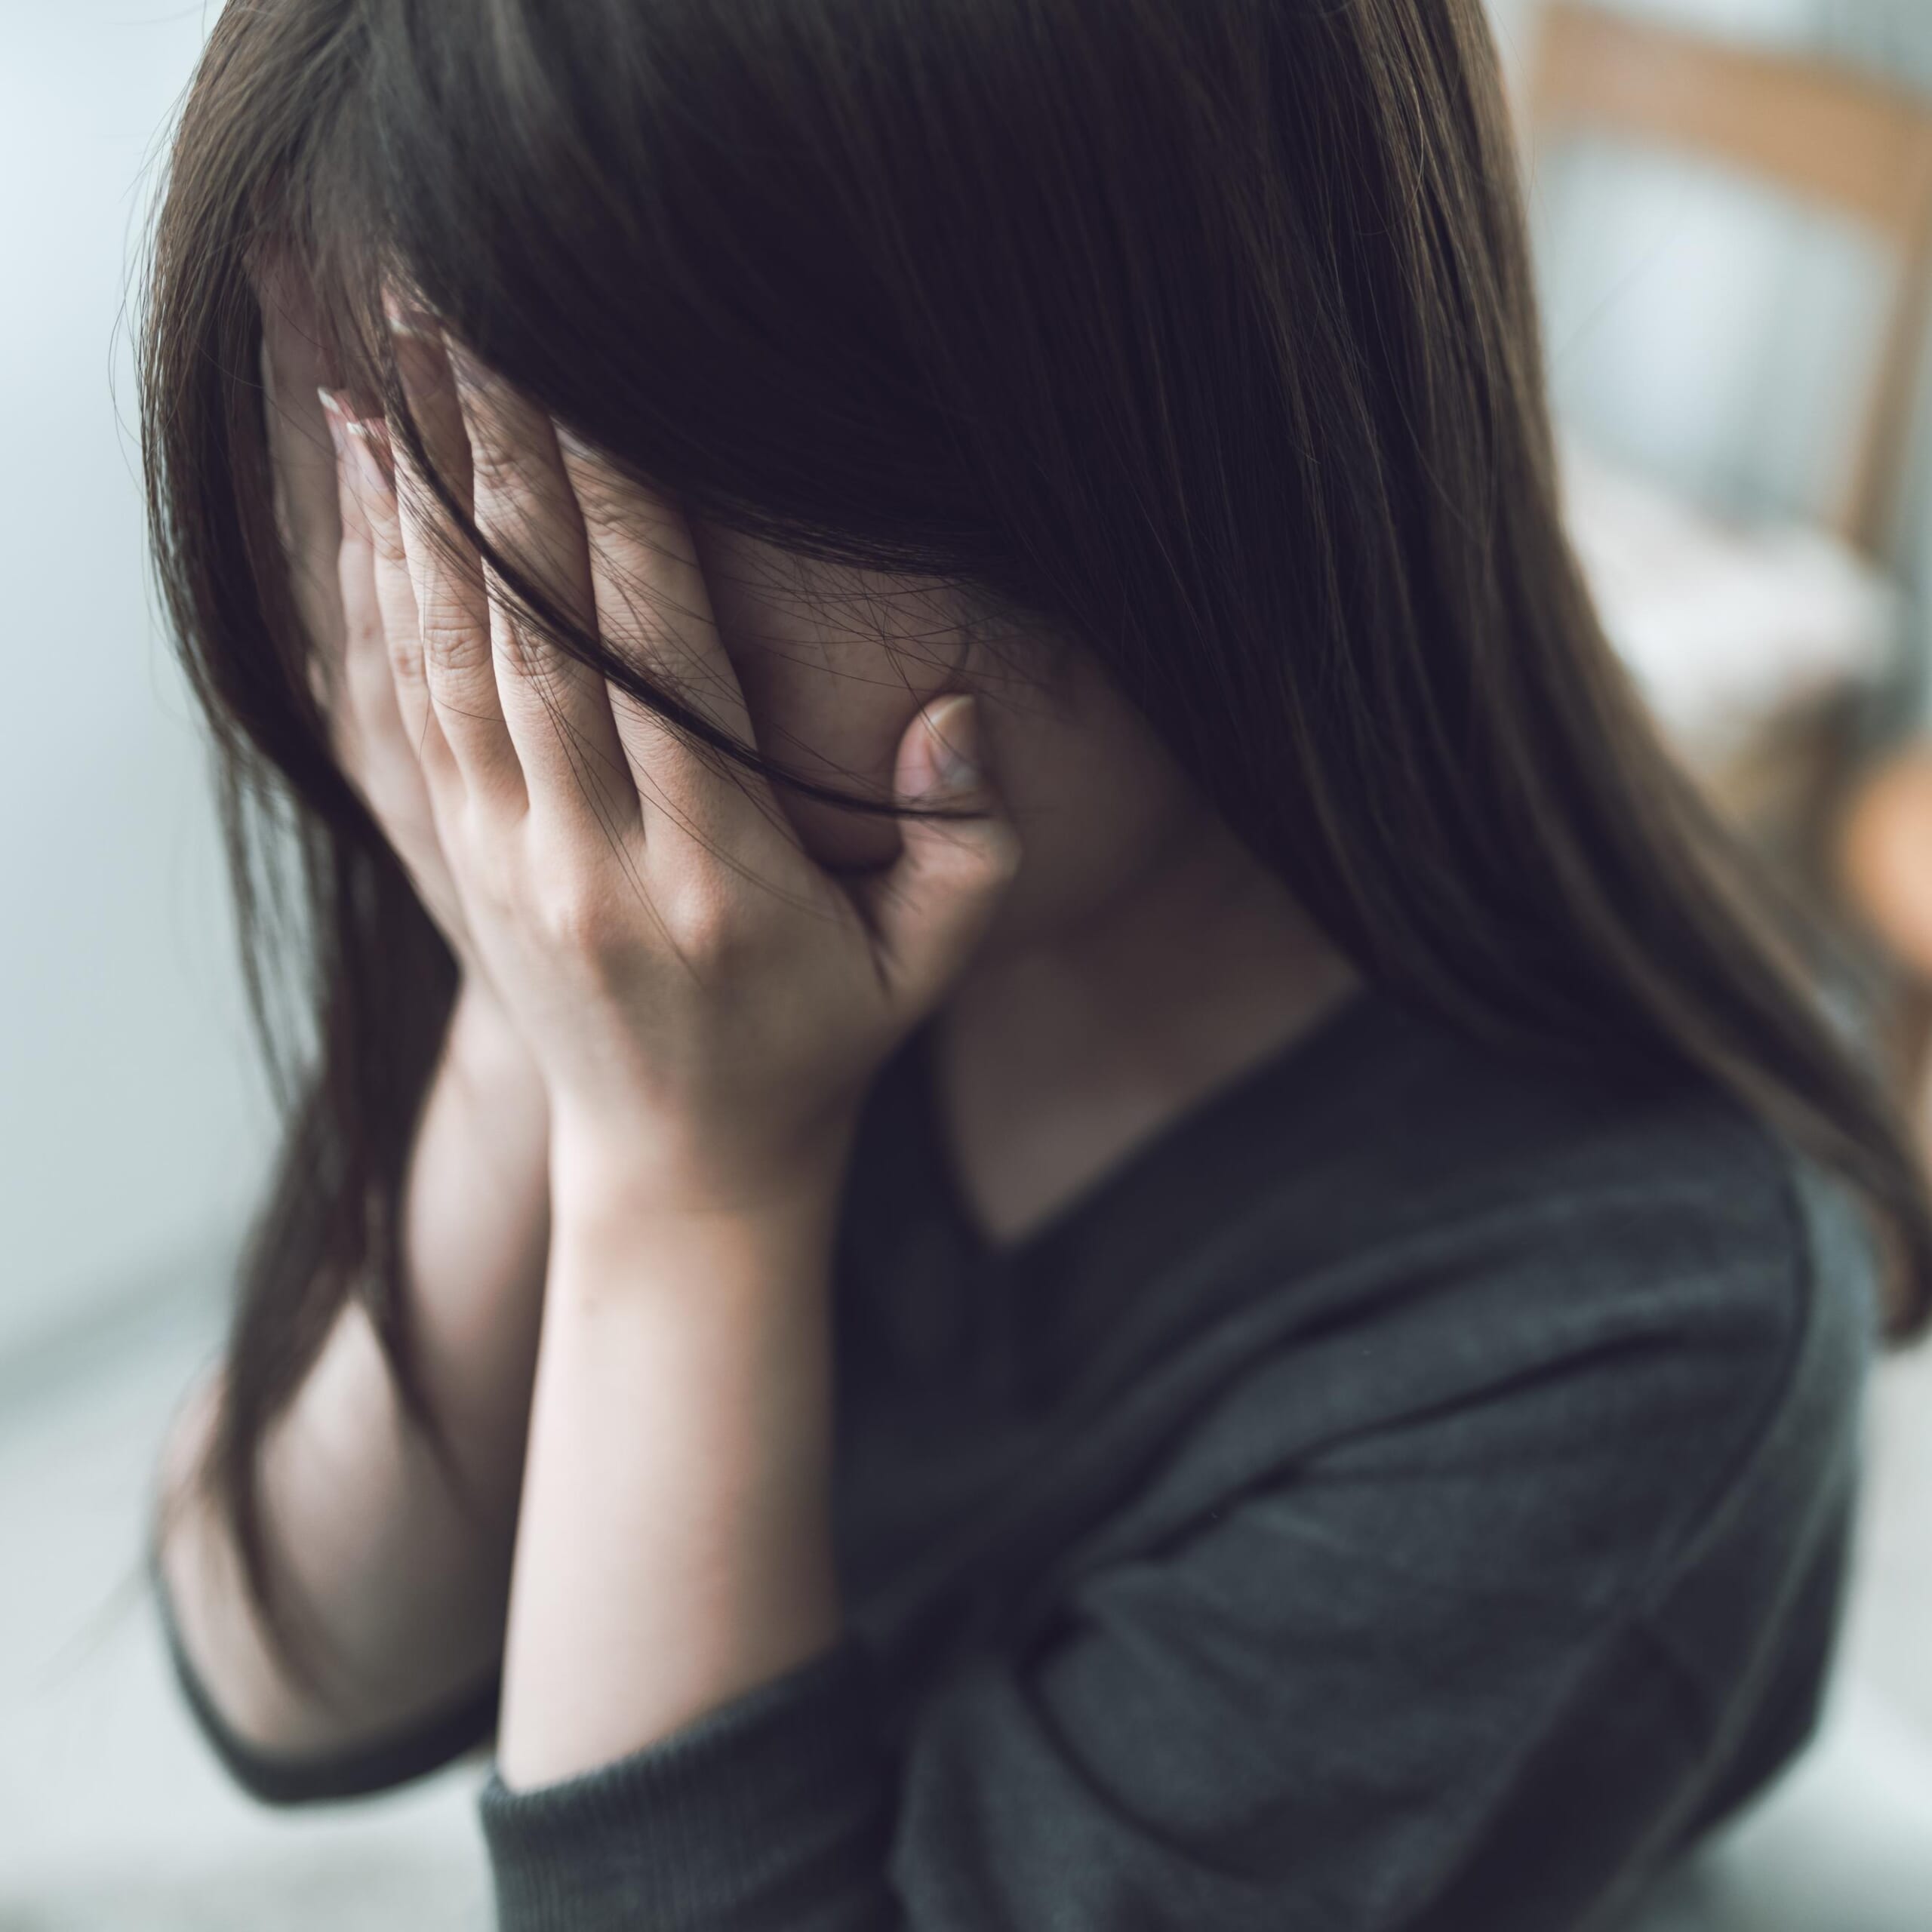 【緊急寄稿】子供を性被害から守るために、私たち大人がすべきこと